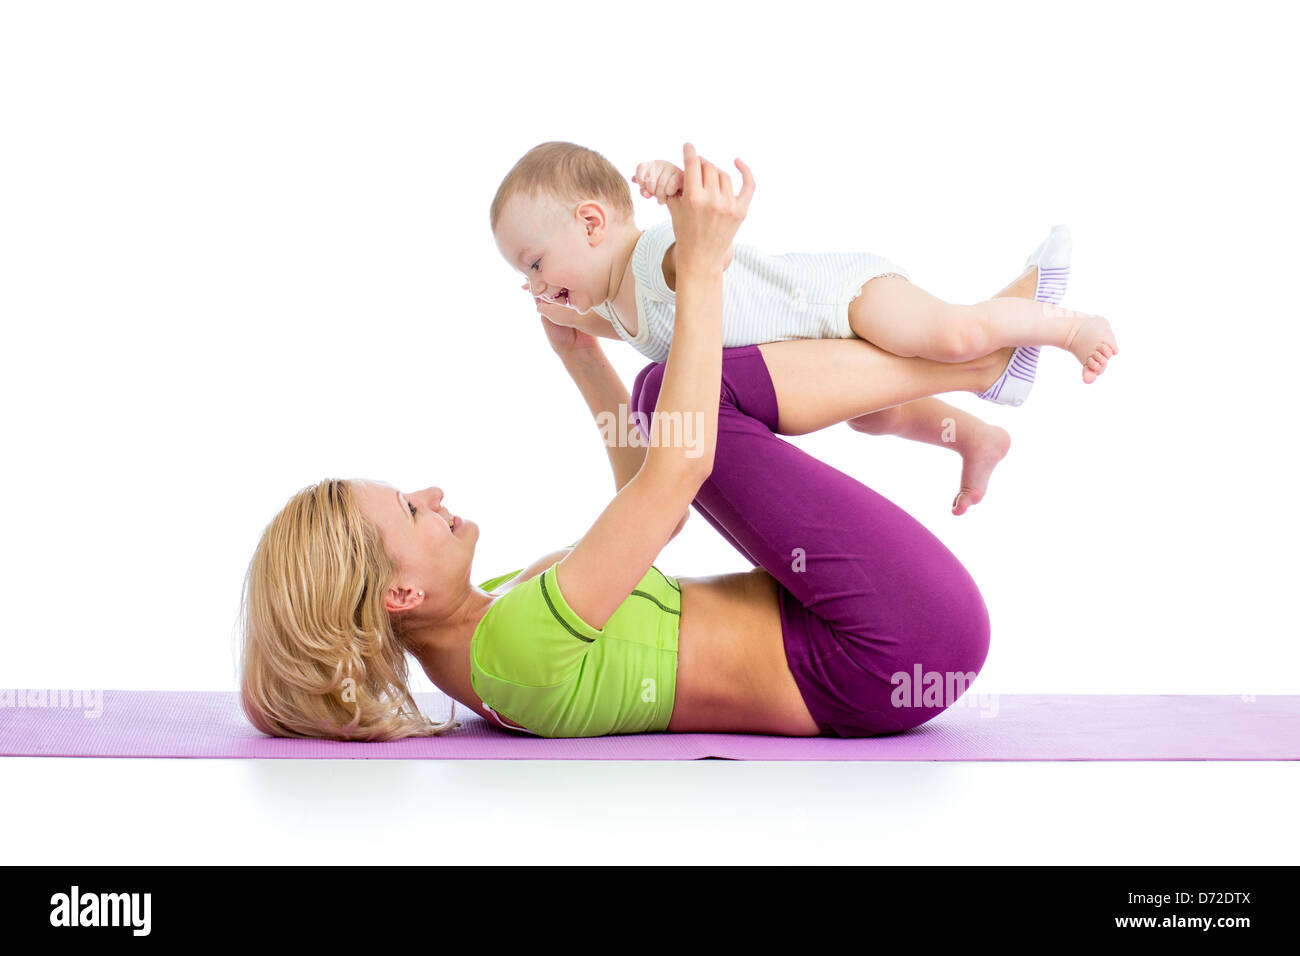 La madre con el bebé haciendo gimnasia y ejercicios físicos Foto de stock